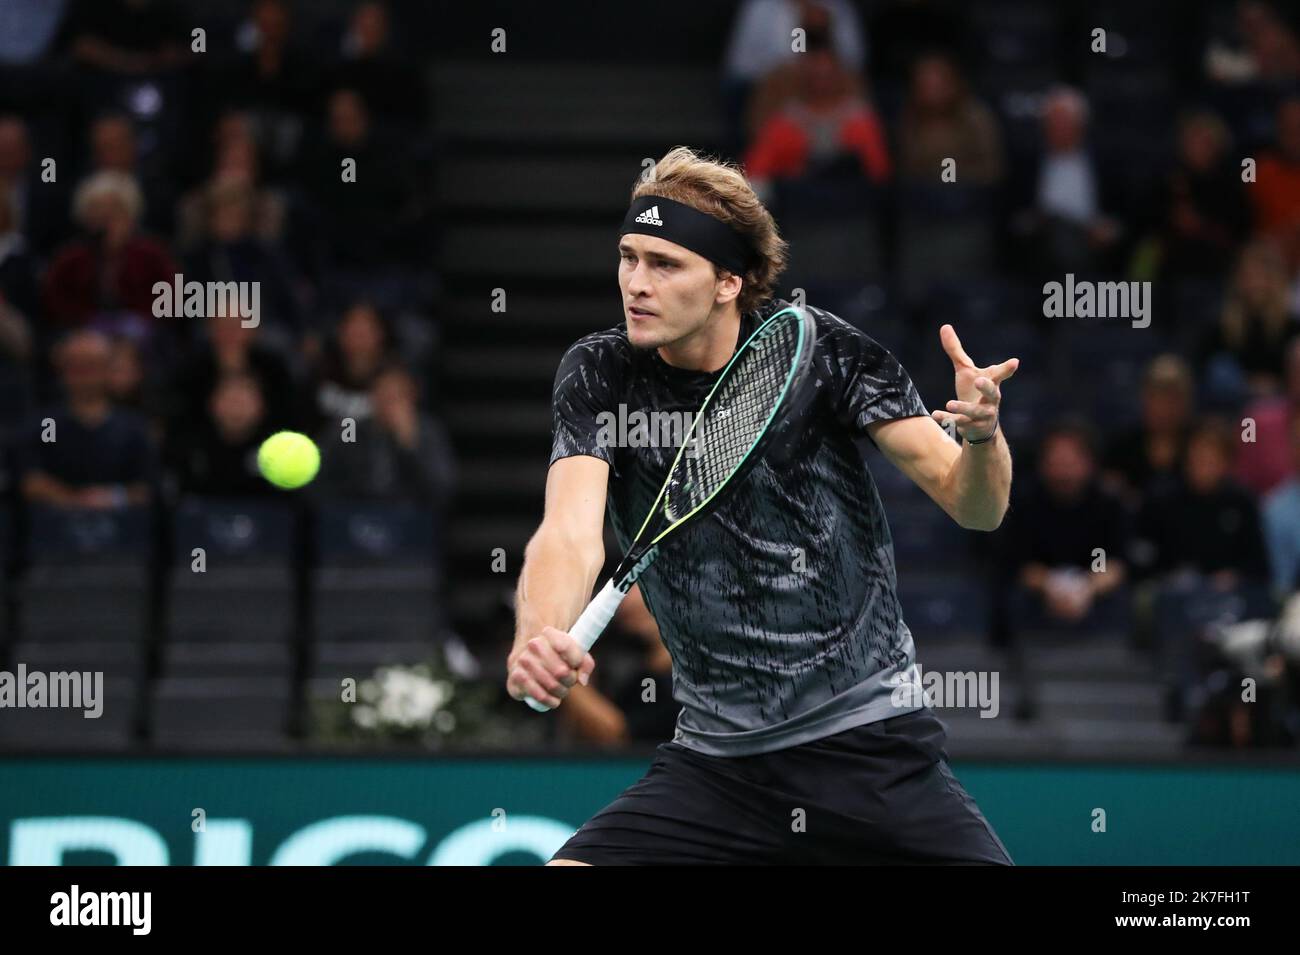 Thierry Larret/Maxppp. Tennis. Rolex Paris Masters. Accorhotels Arena, Parigi (75), le 5 novembre 2021. Quart de finale Casper RUUD (NOR) vs Alexander SVEREV (GER) Foto Stock